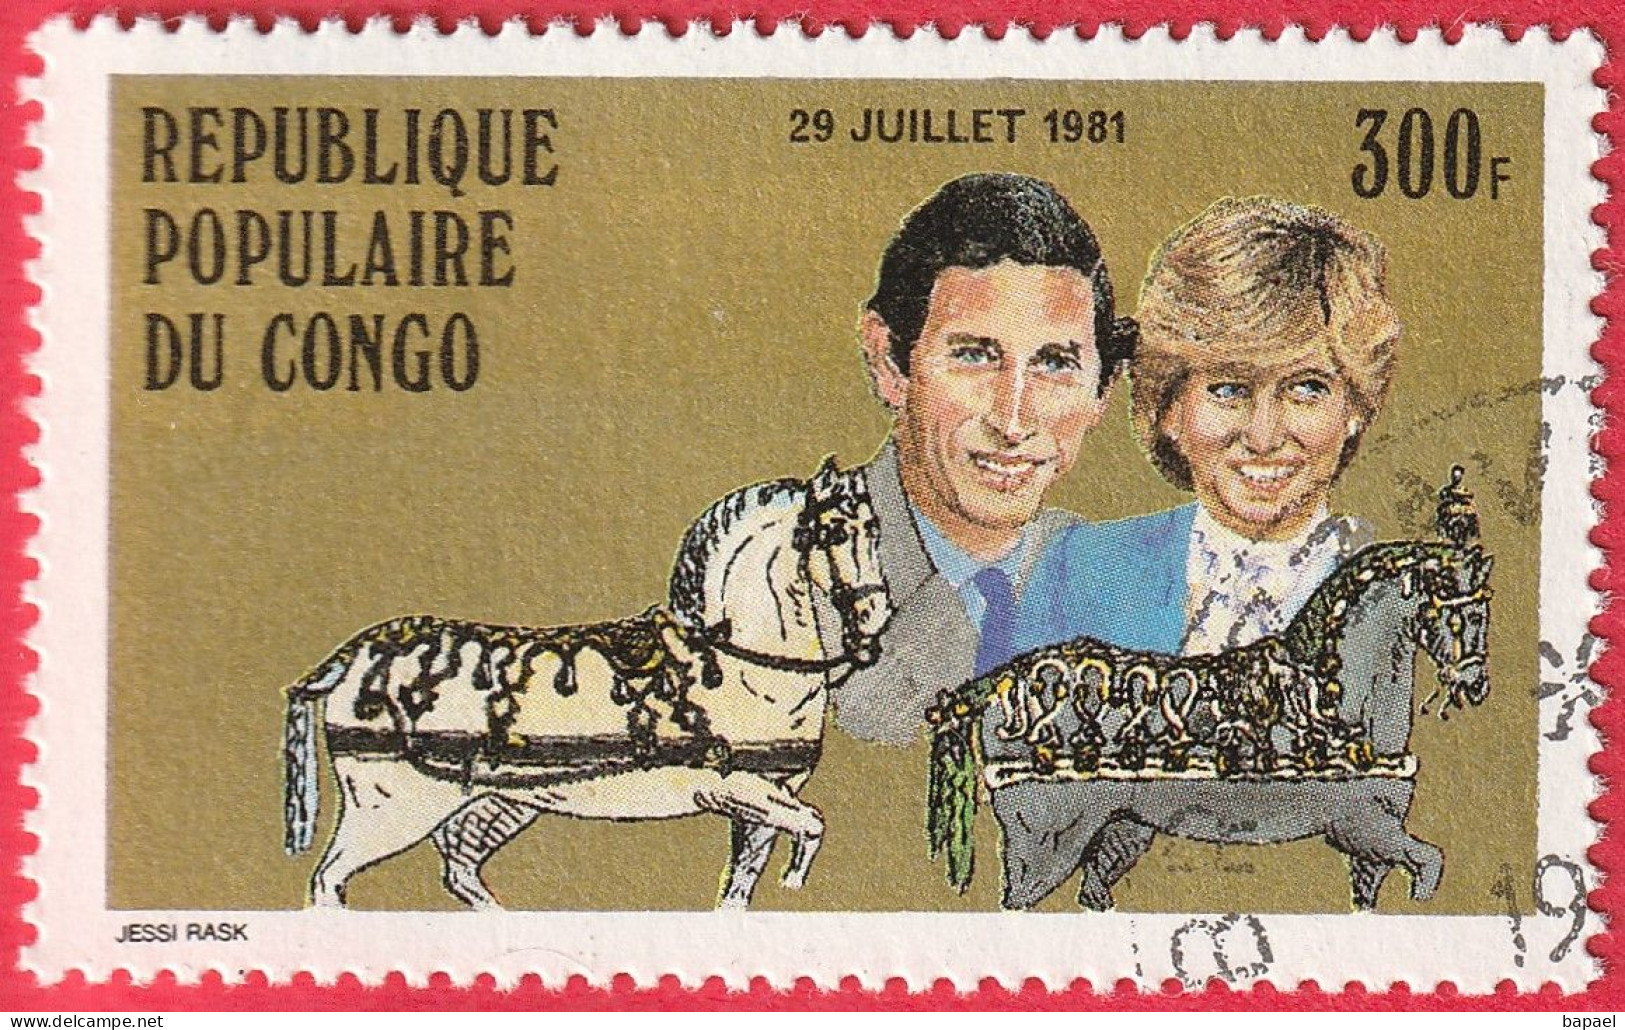 N° Yvert & Tellier 639 - Rép. Du Congo (1981) (Oblitéré) - Mariage Royal Du Prince Charles Et De Lady Diana Spencer - Used